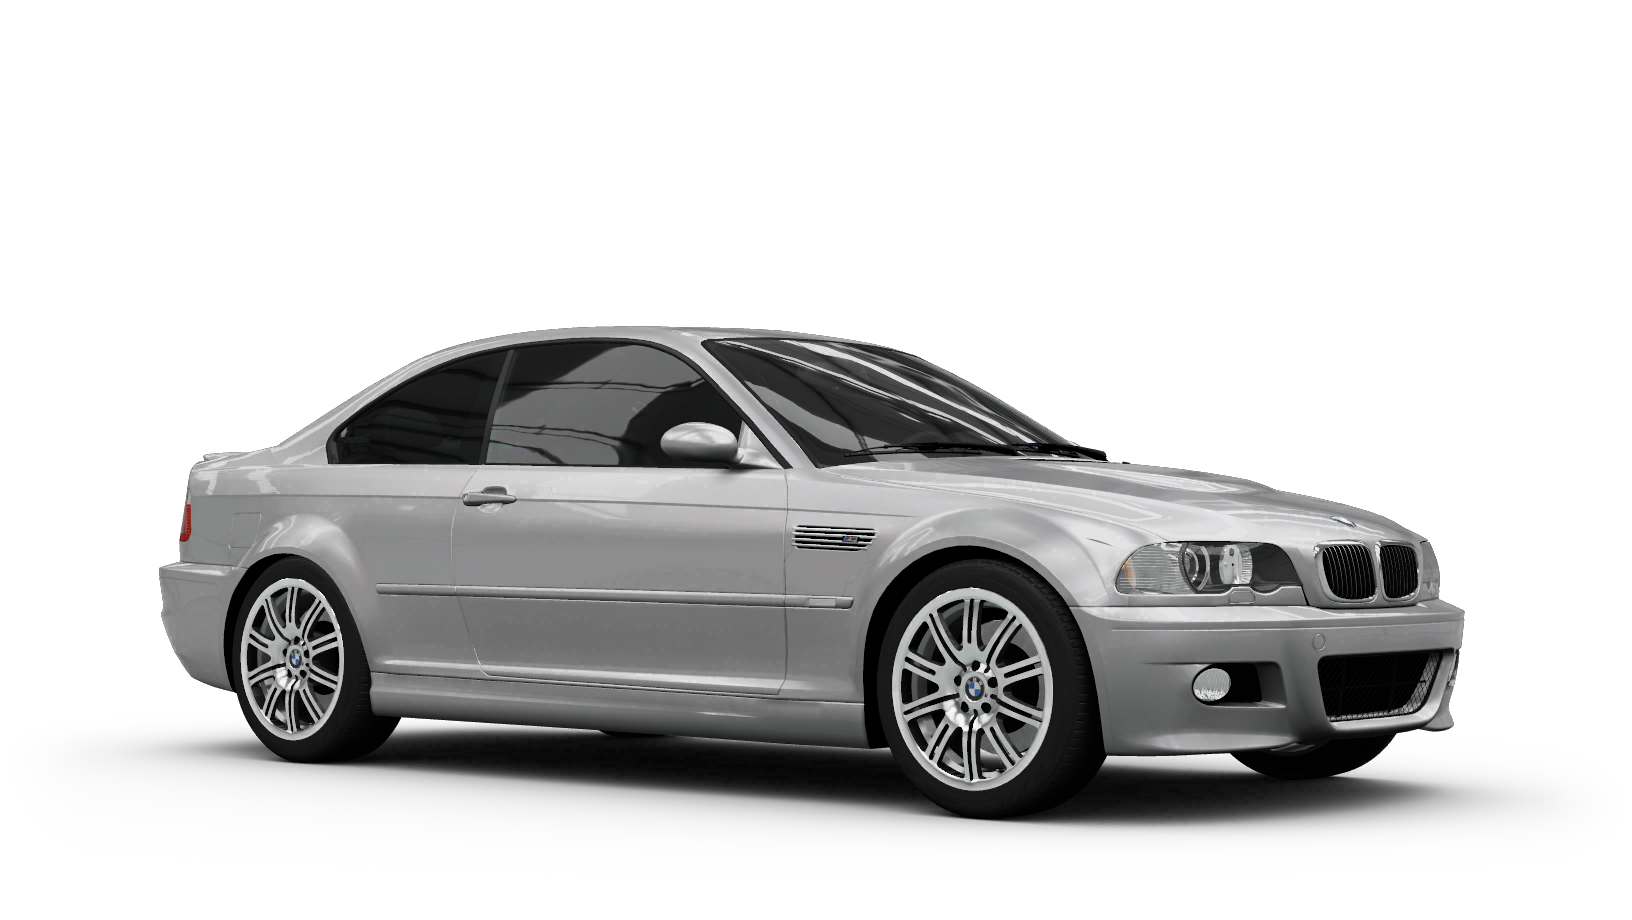 Forza-Horizon-4-BMW-M3-2005